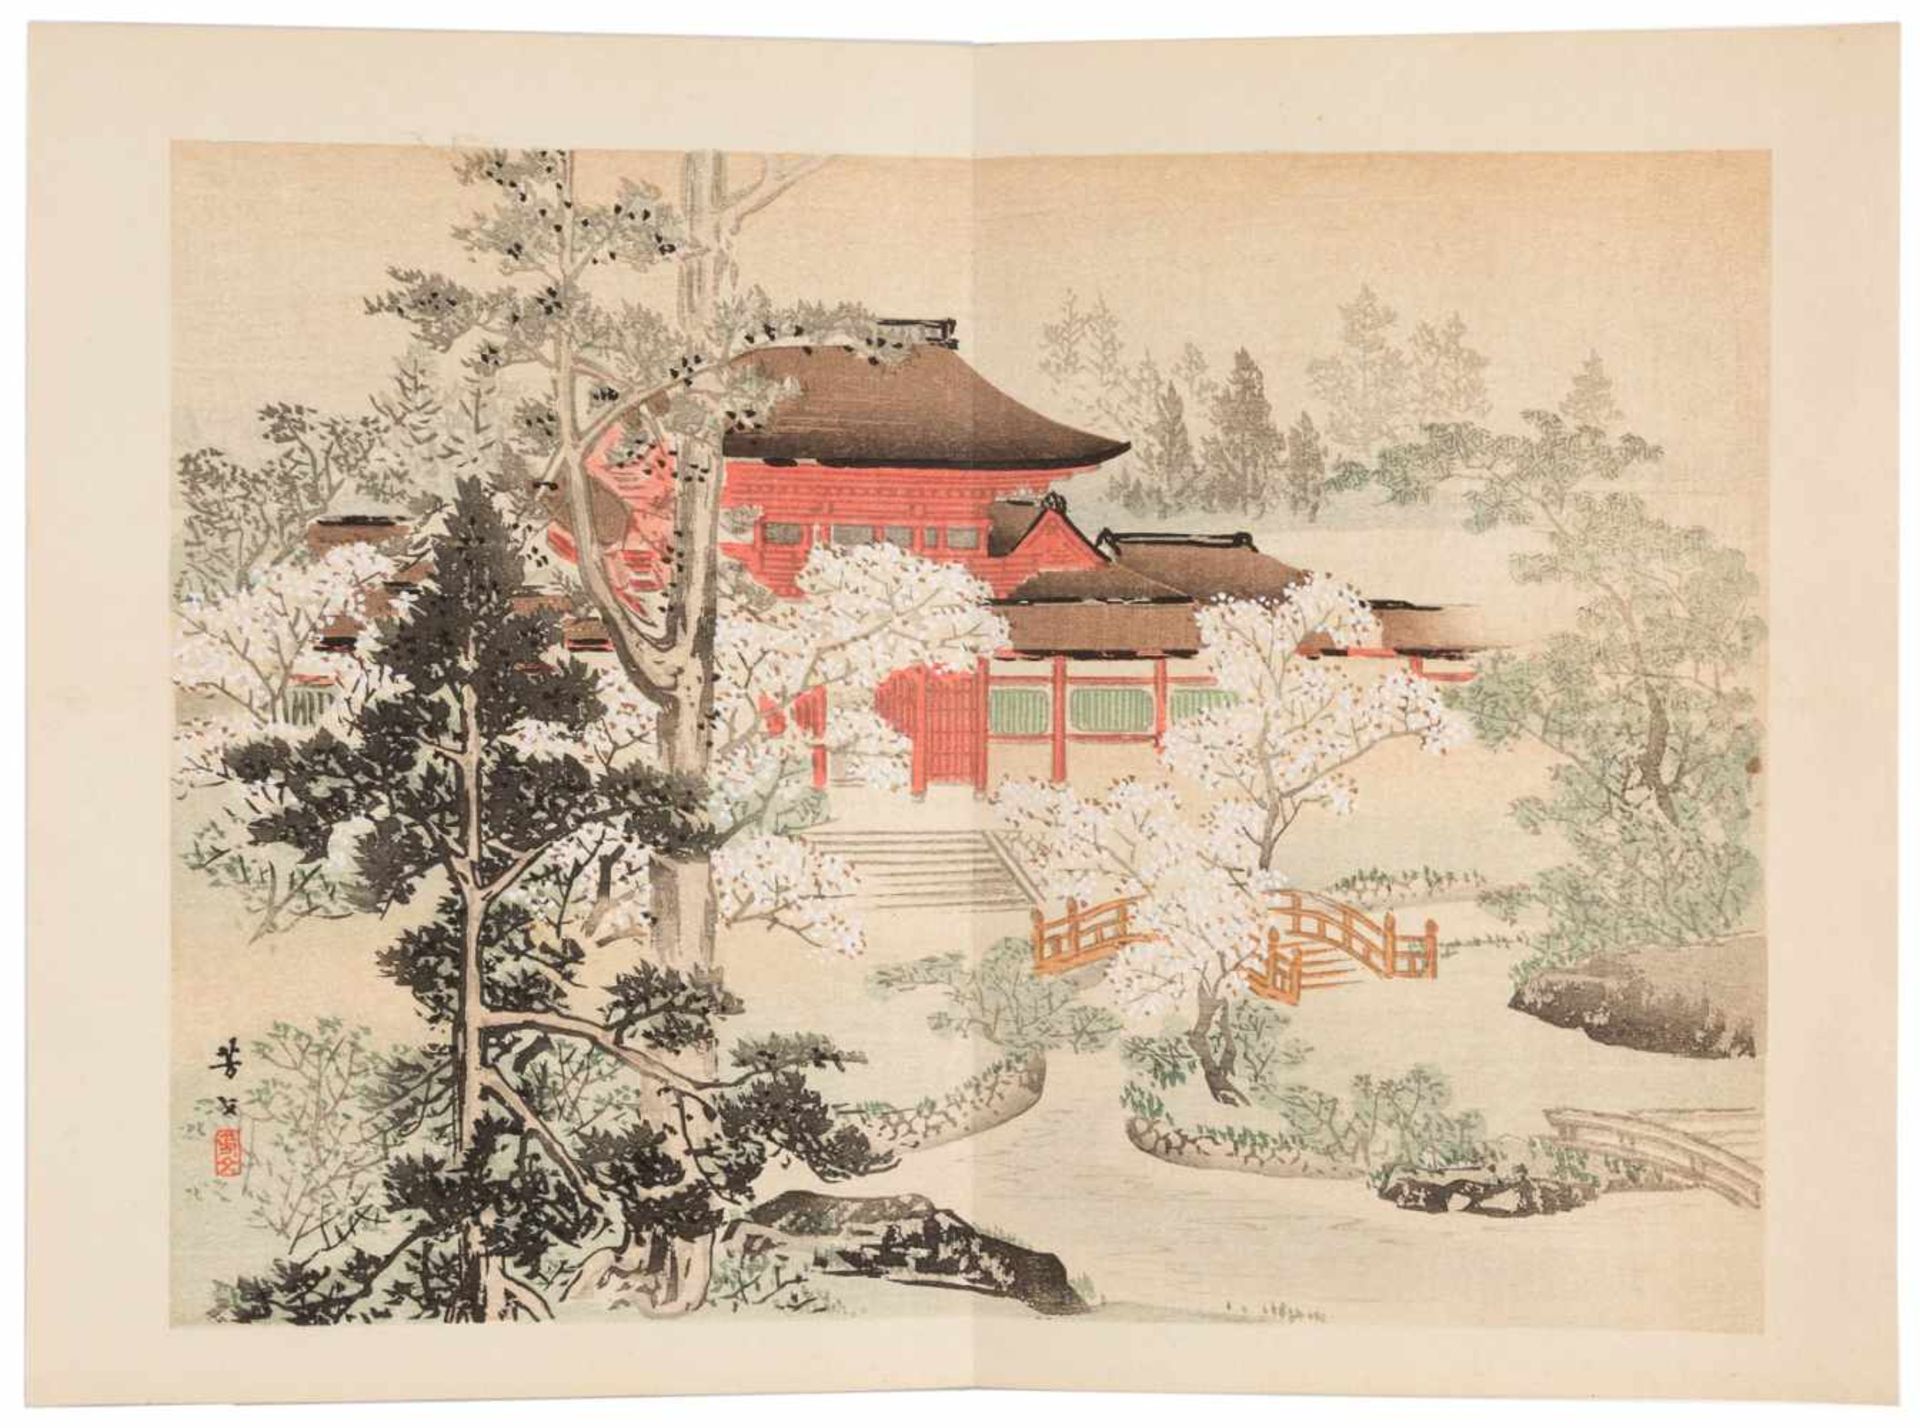 DREI BÜCHER MIT LANDSCHAFTLICHEN SZENEN Japan, 1895 Druck auf Papier. Ca. 23,5 cm x 16 cm. - Bild 7 aus 7